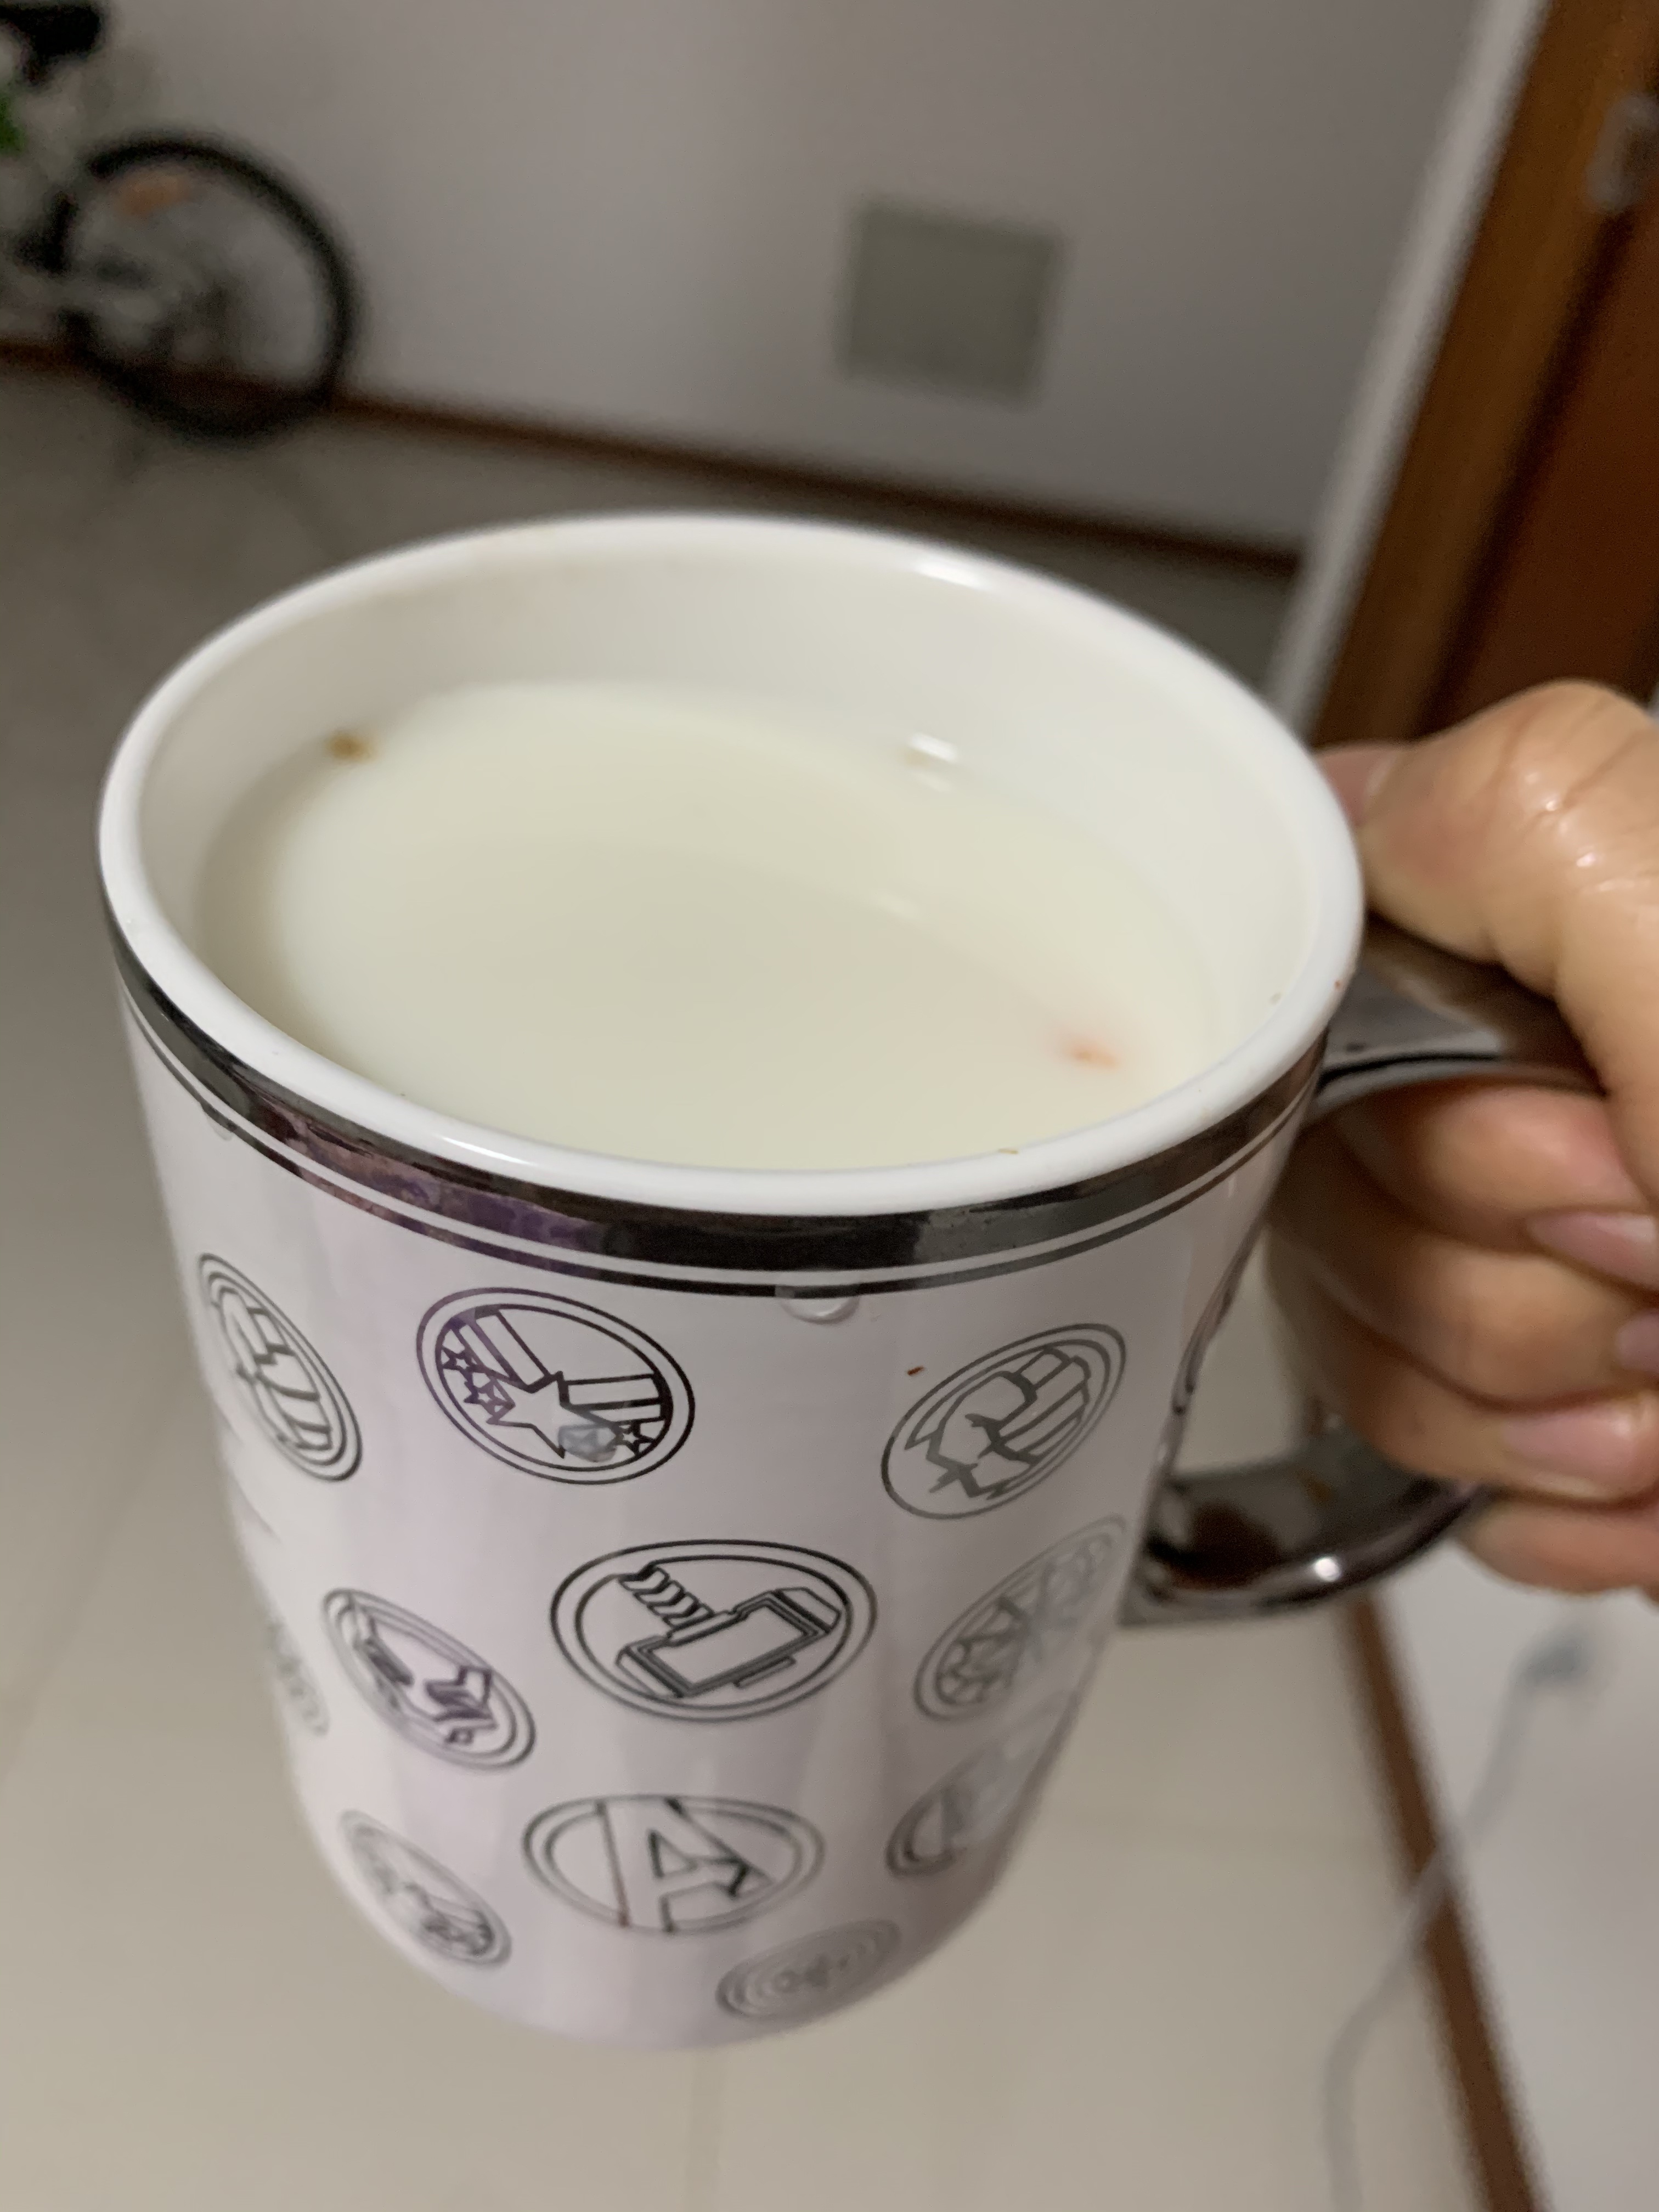 姜味不重效果好的祛寒神物-姜汁牛奶(液态)